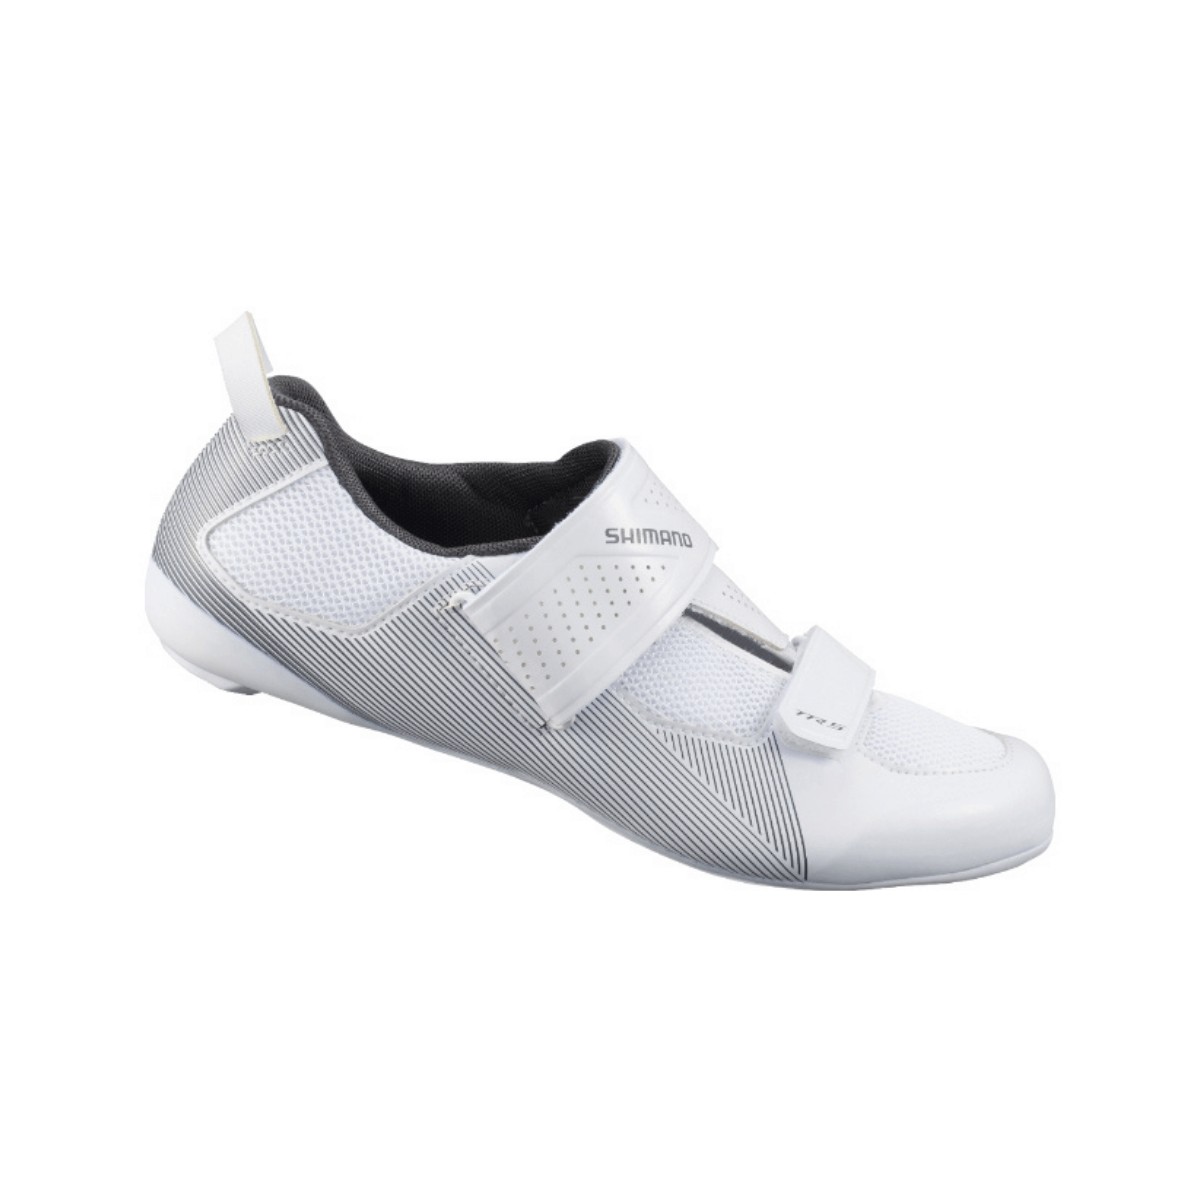 R50 For günstig Kaufen-Shimano TR501 Weiße Schuhe, Größe 42 - EUR. Shimano TR501 Weiße Schuhe, Größe 42 - EUR <![CDATA[Shimano TR501 Weiße Schuhe
 Der Shimano TR501 Triathlonschuh verfügt über fortschrittliche Passform- und Leistungstechnologie.